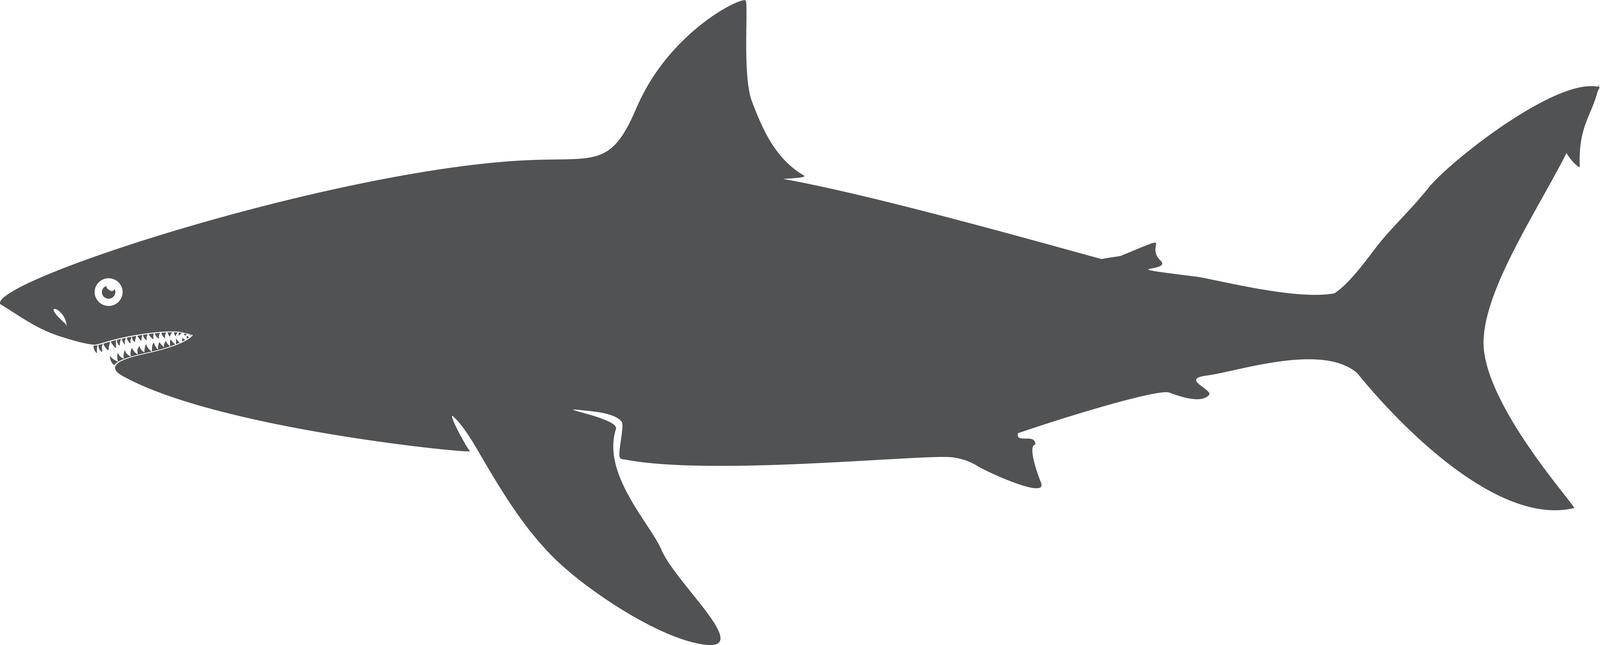 Shark black silhouette. Dangerous ocean predator icon isolated on white background